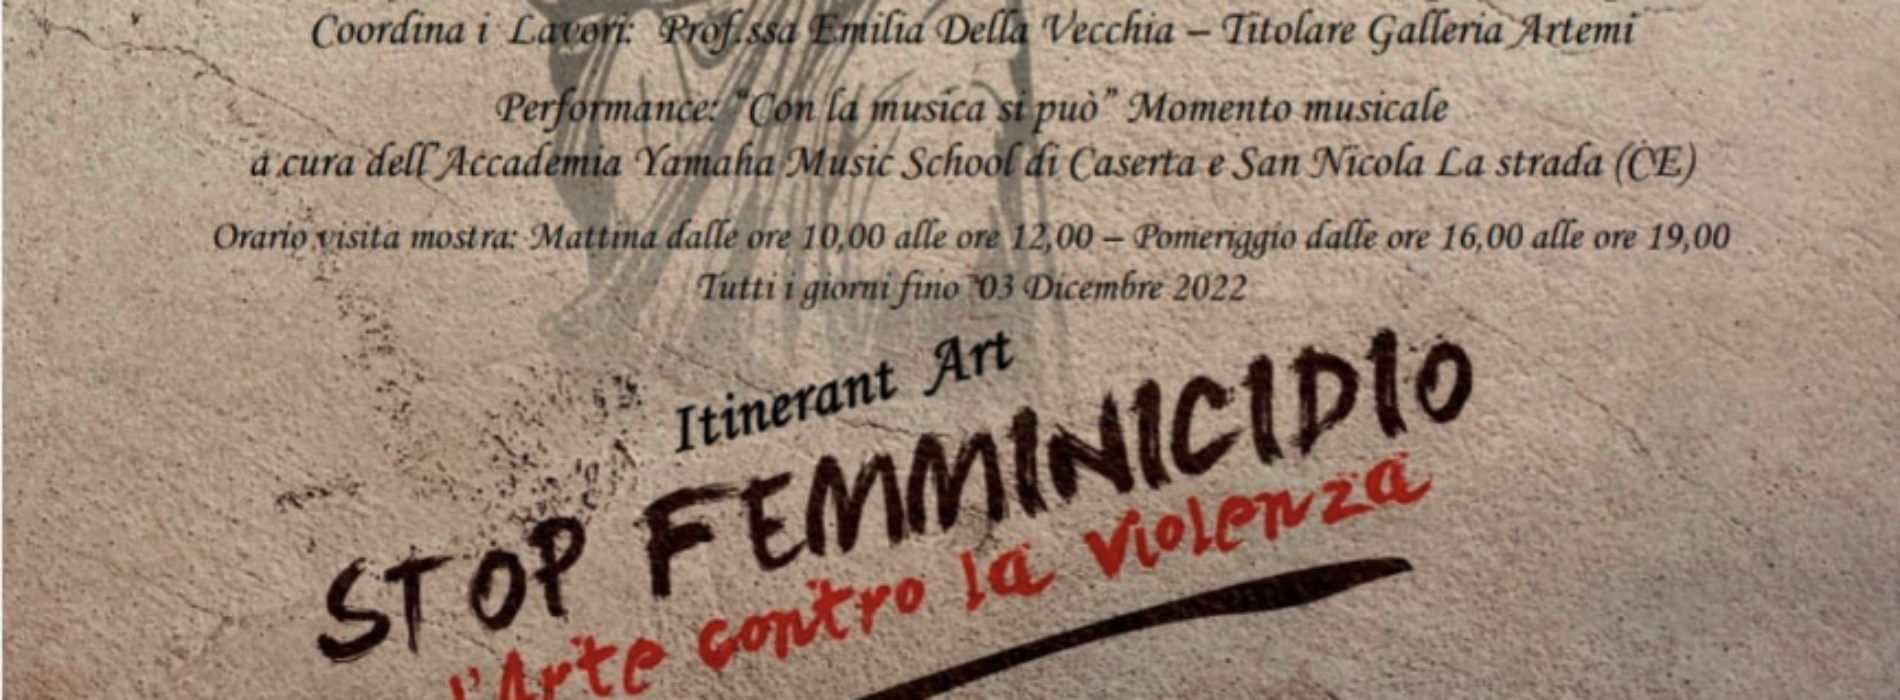 No al femminicidio, tra arte e musica alla galleria Artemi